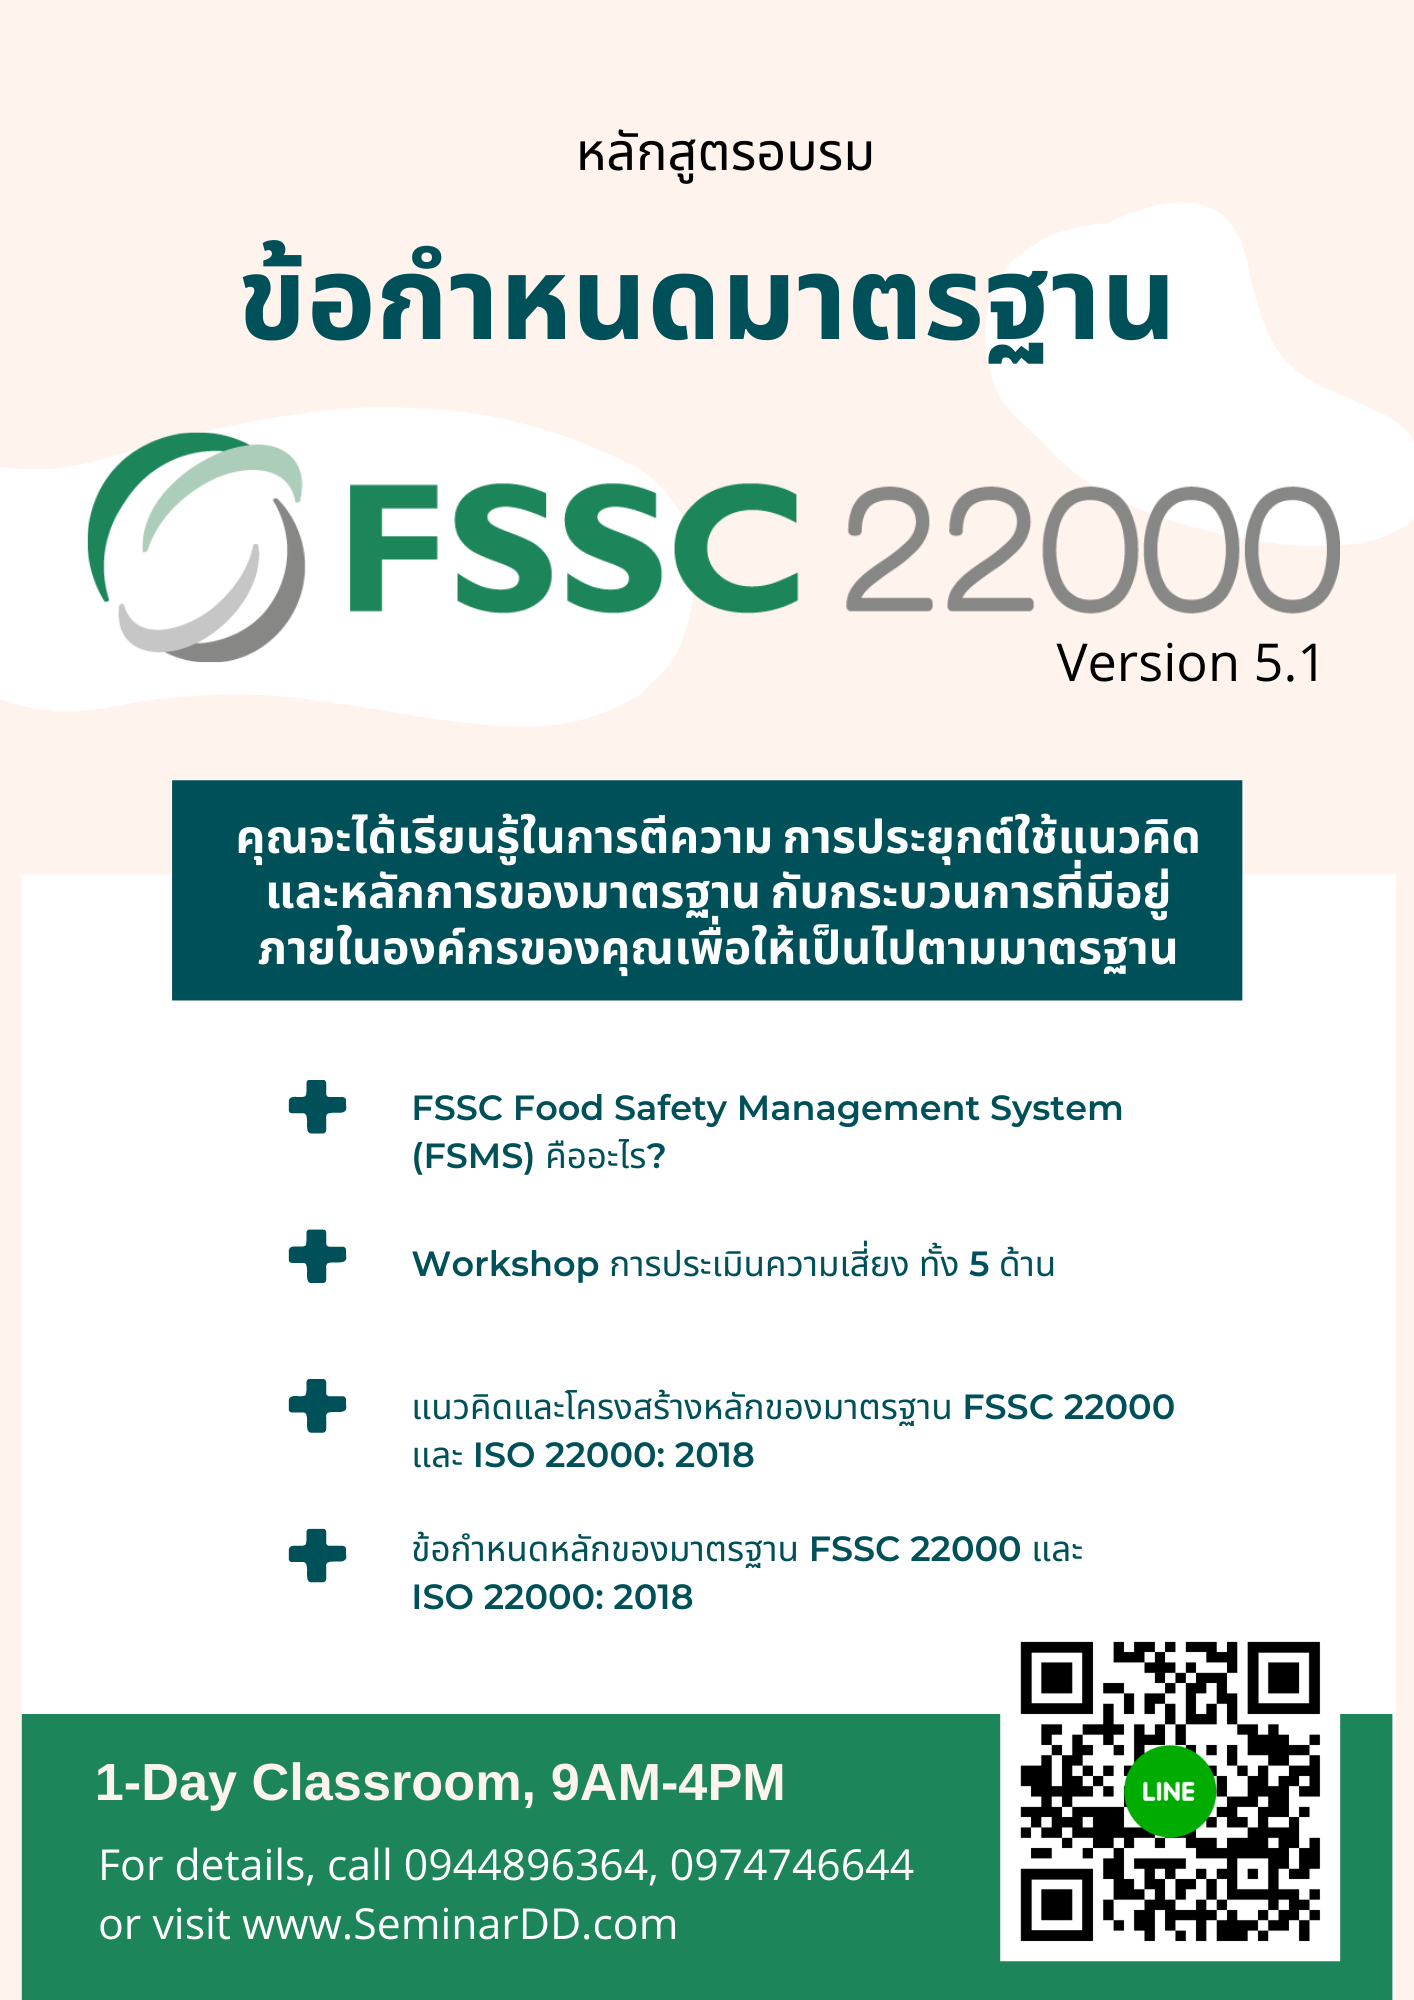 หลักสูตร อบรม ข้อกำหนดมาตรฐาน FSSC22000 Version 6.0 (Requirements)